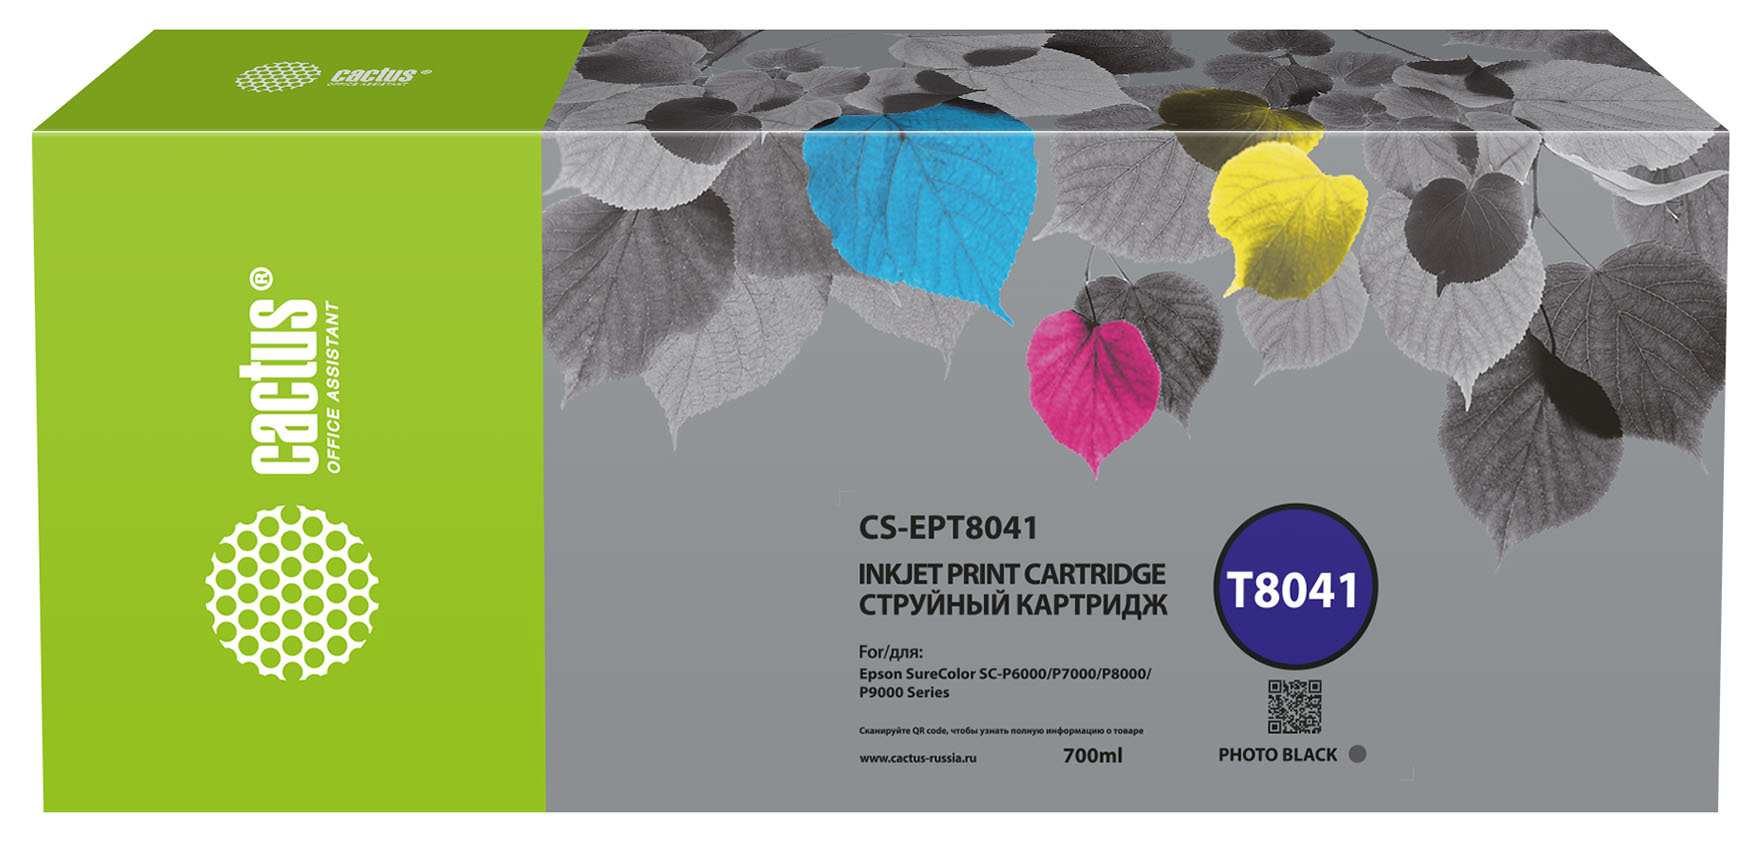 Картридж струйный Cactus CS-EPT8041 T8041 фото черный матовый (700мл) для Epson SureColor SC-P6000/7000/8000/9000